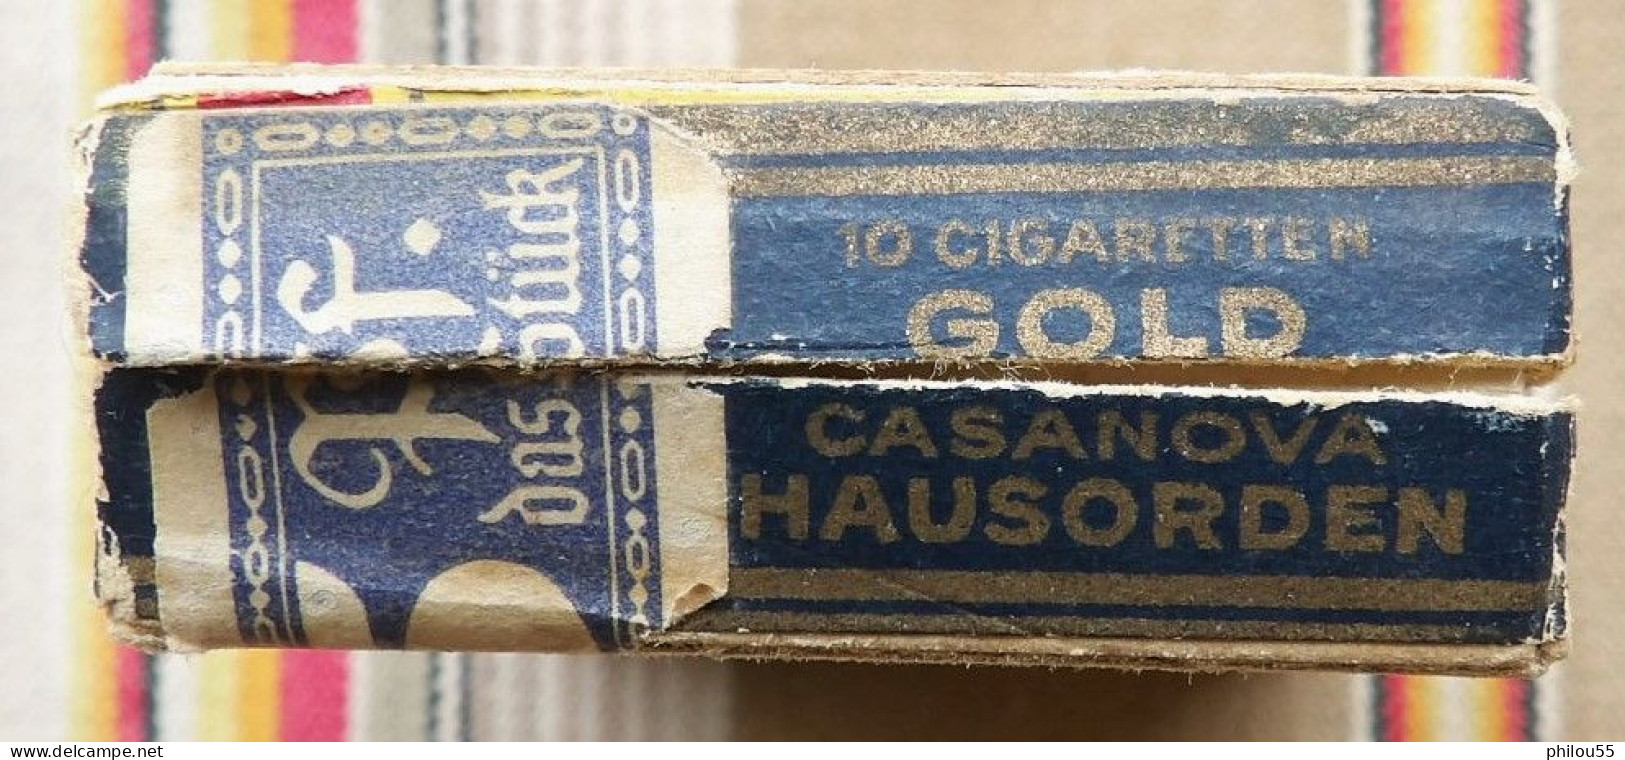 COLLECTION Boite Vide 10 Cigarettes CASANOVA HAUSORDEN GOLD - Empty Cigarettes Boxes